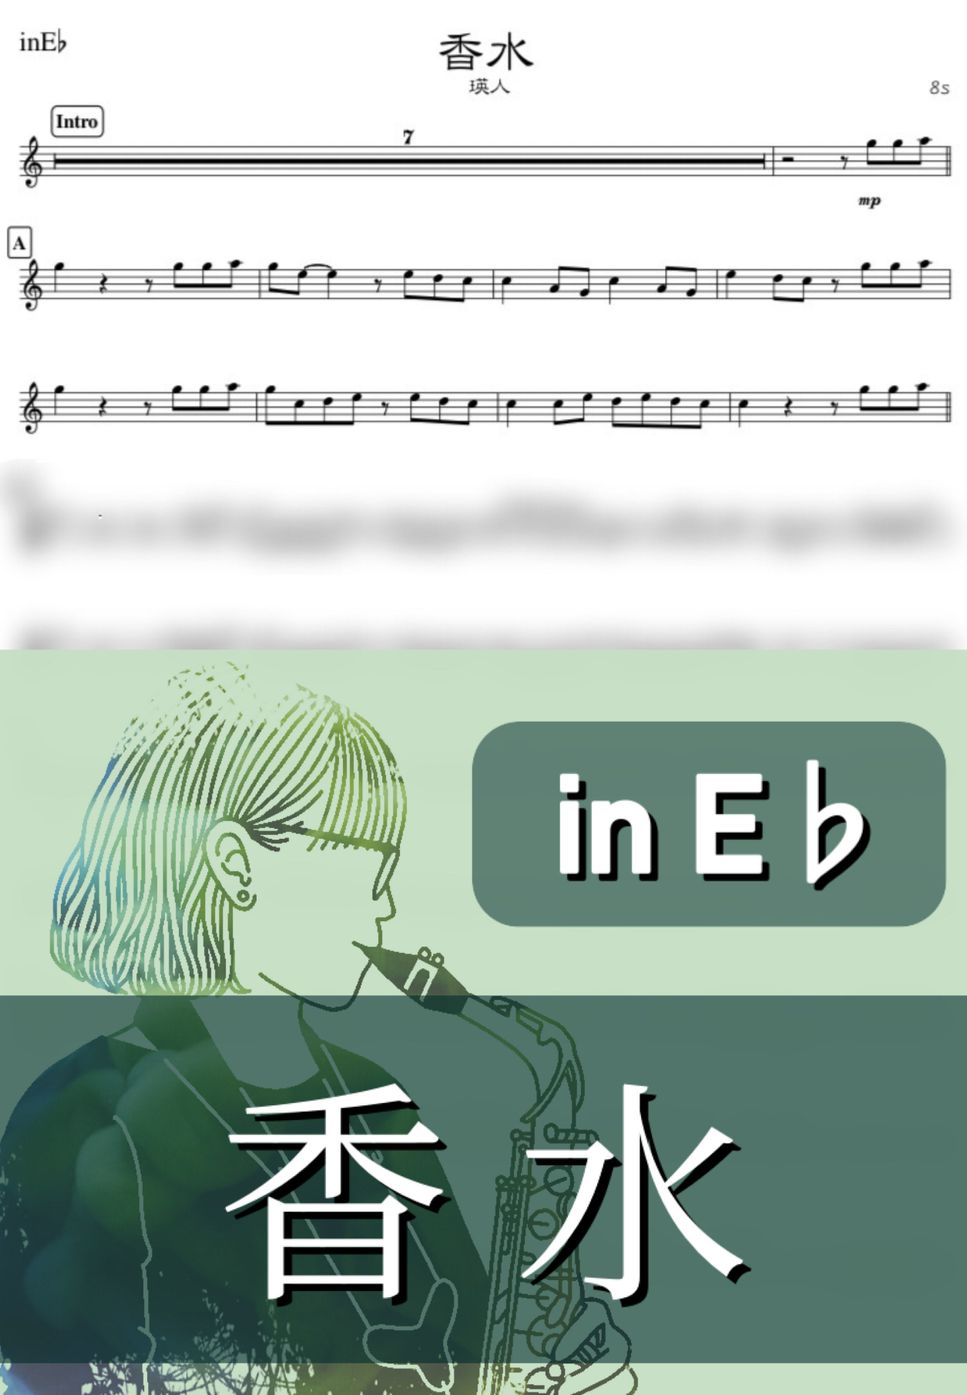 瑛人 - 香水 (E♭) by kanamusic